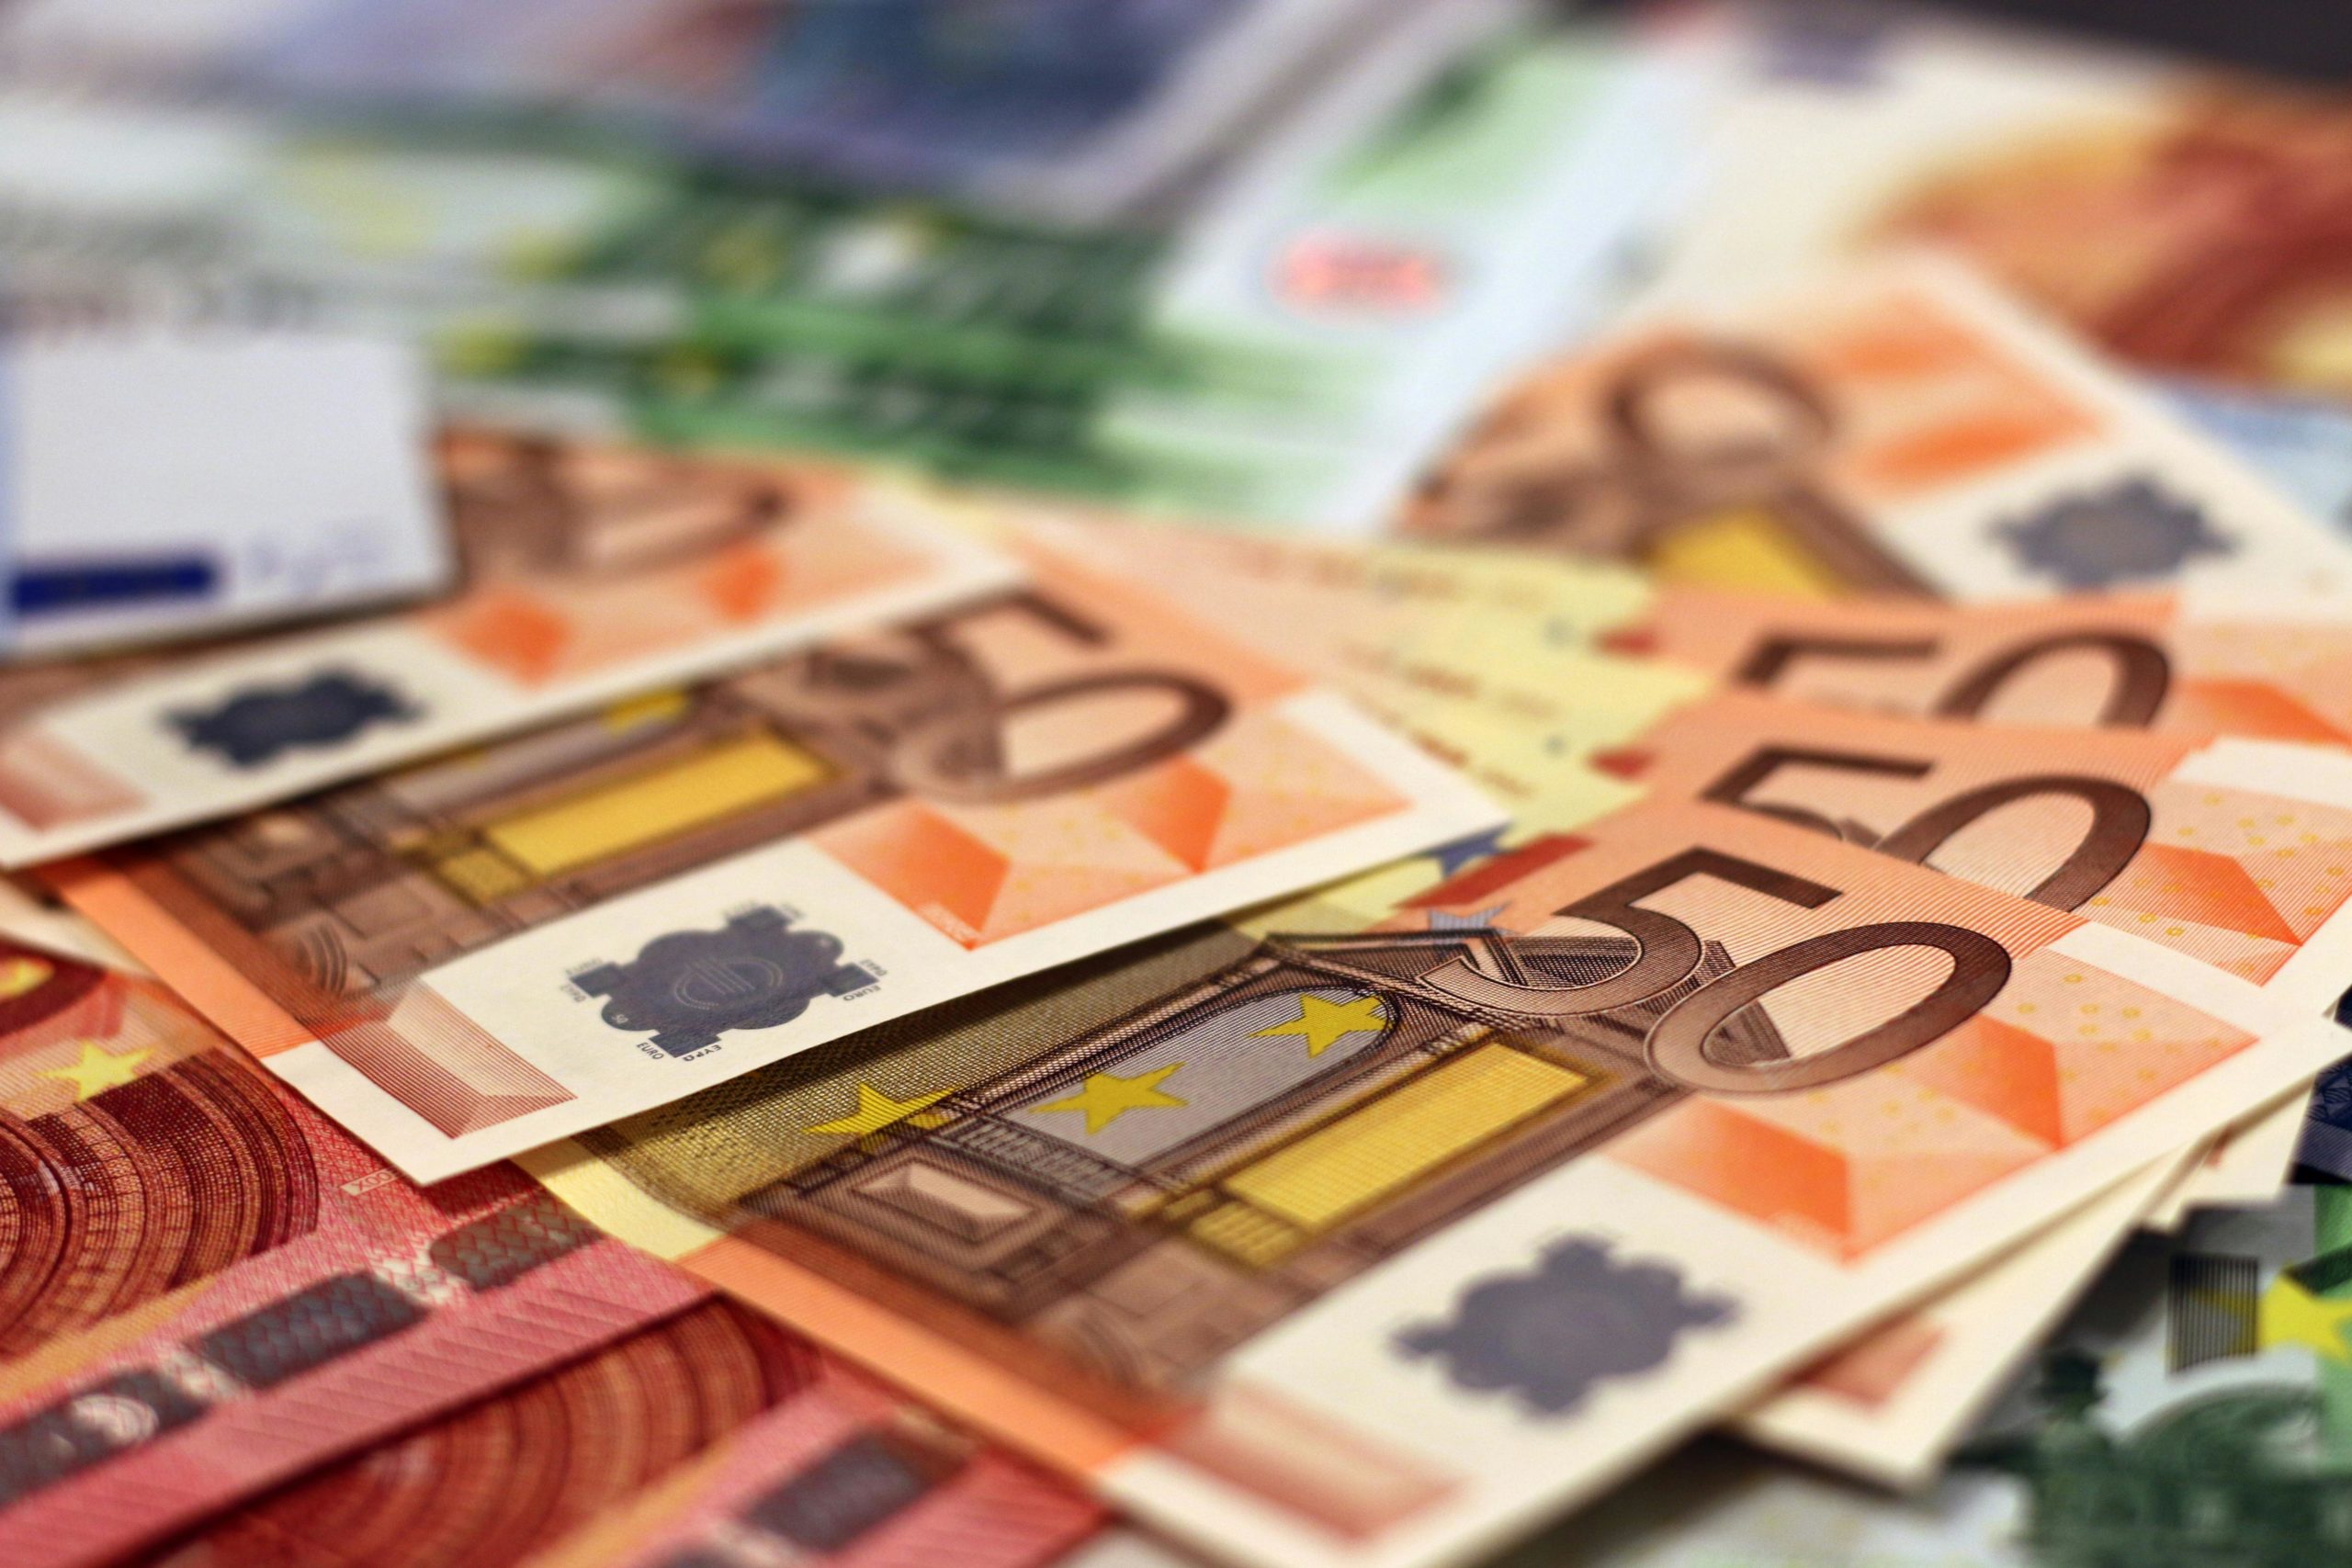 Hallan dos millones de euros en fajos de billetes dentro de un VTC en pleno centro de Madrid